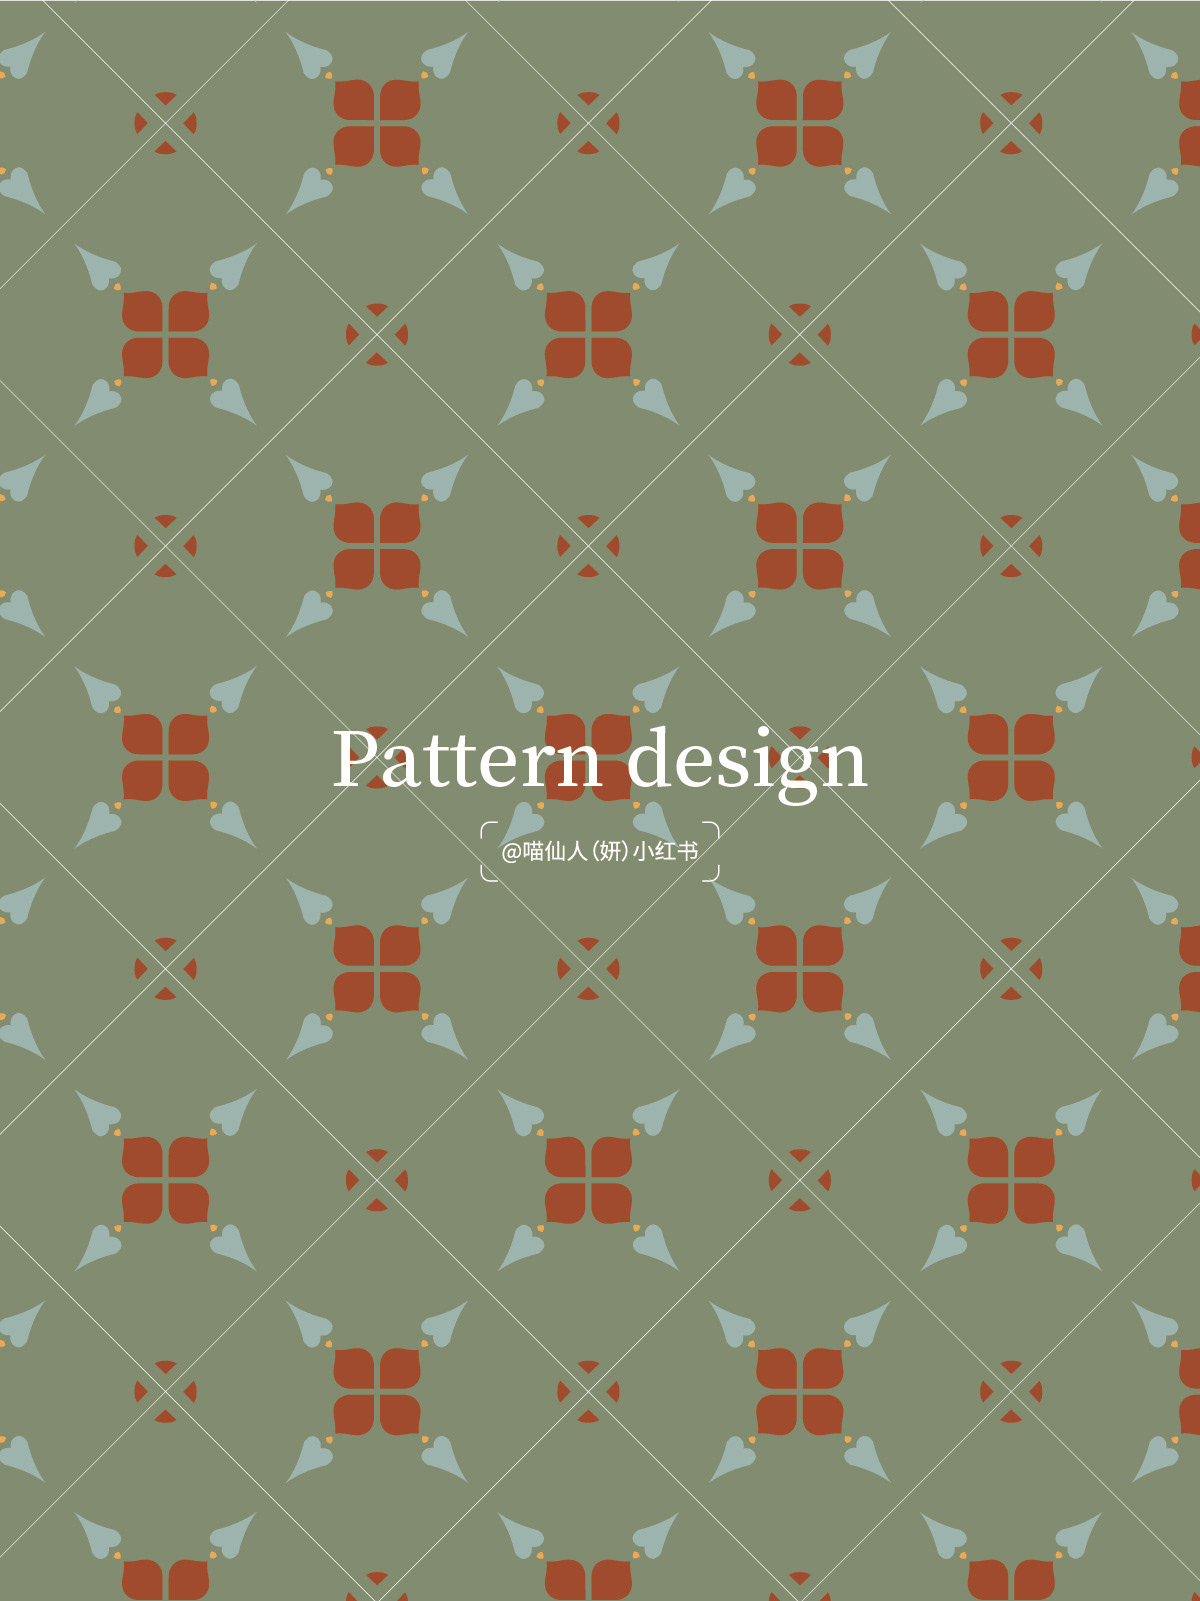 图案 插画 原创  pattern textile 敦煌   panttern design 四方连续 ILLUSTRATION  Dunhuang